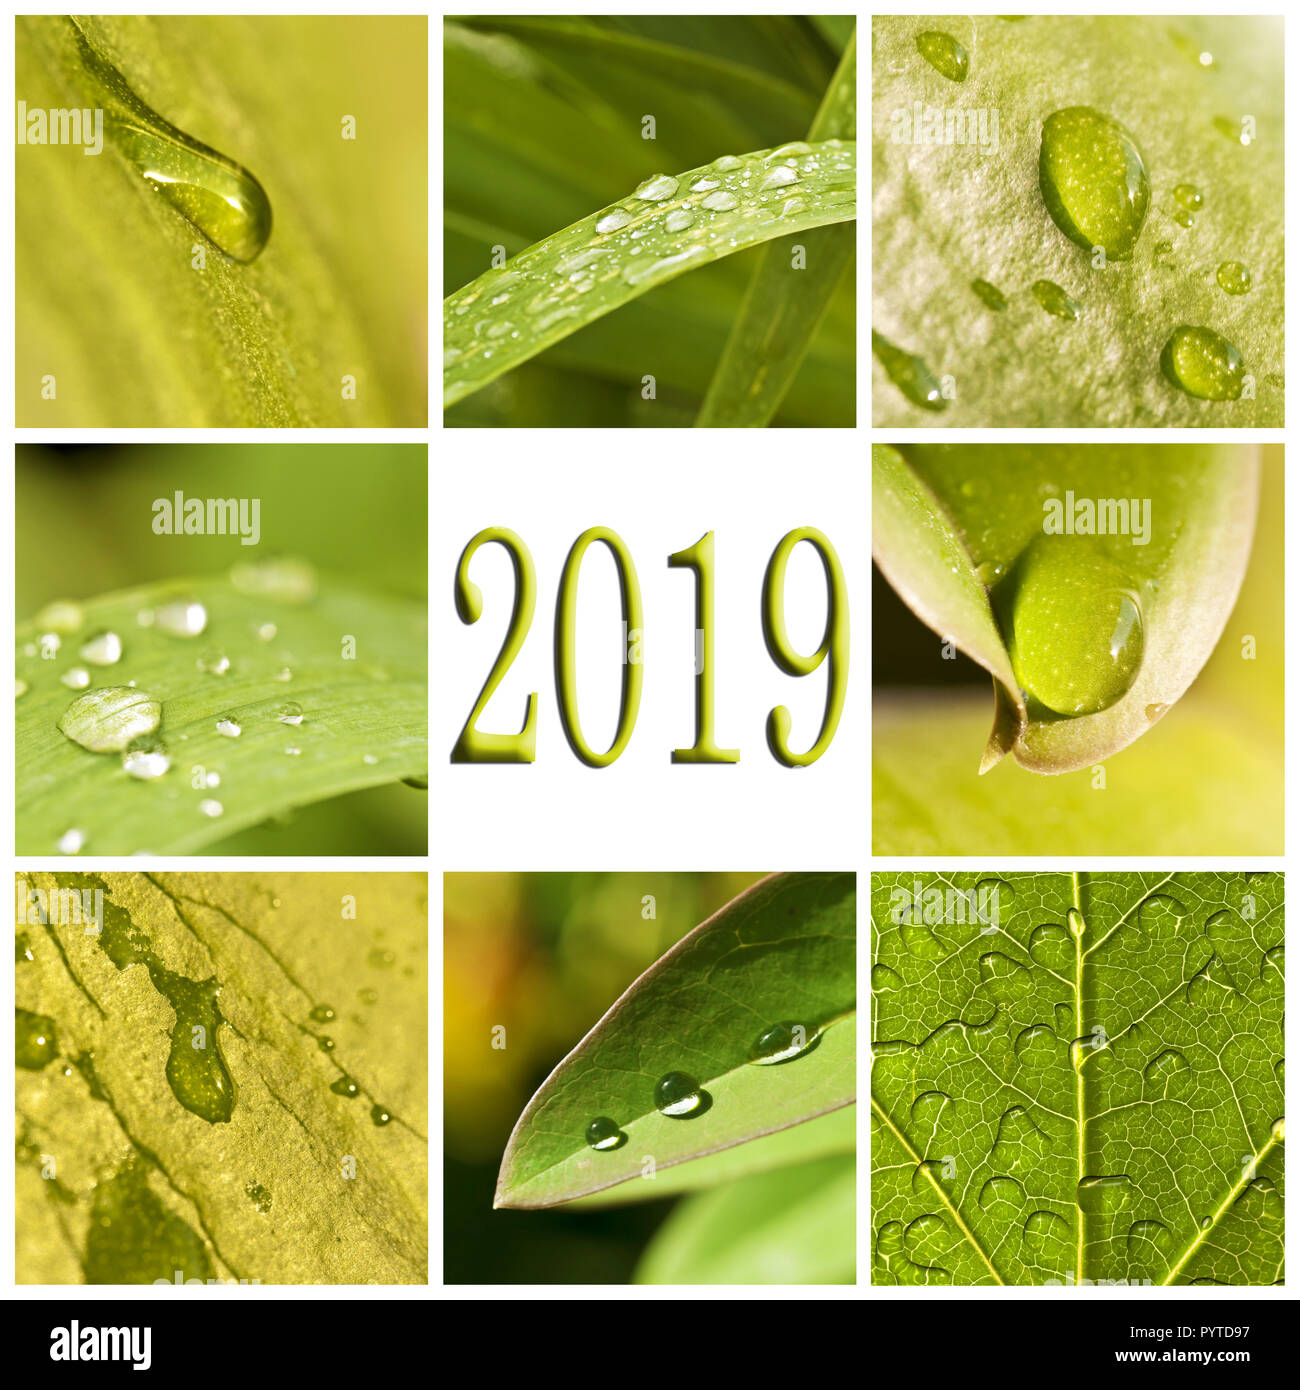 2019, foglie verdi e le gocce di pioggia photo collage Foto Stock